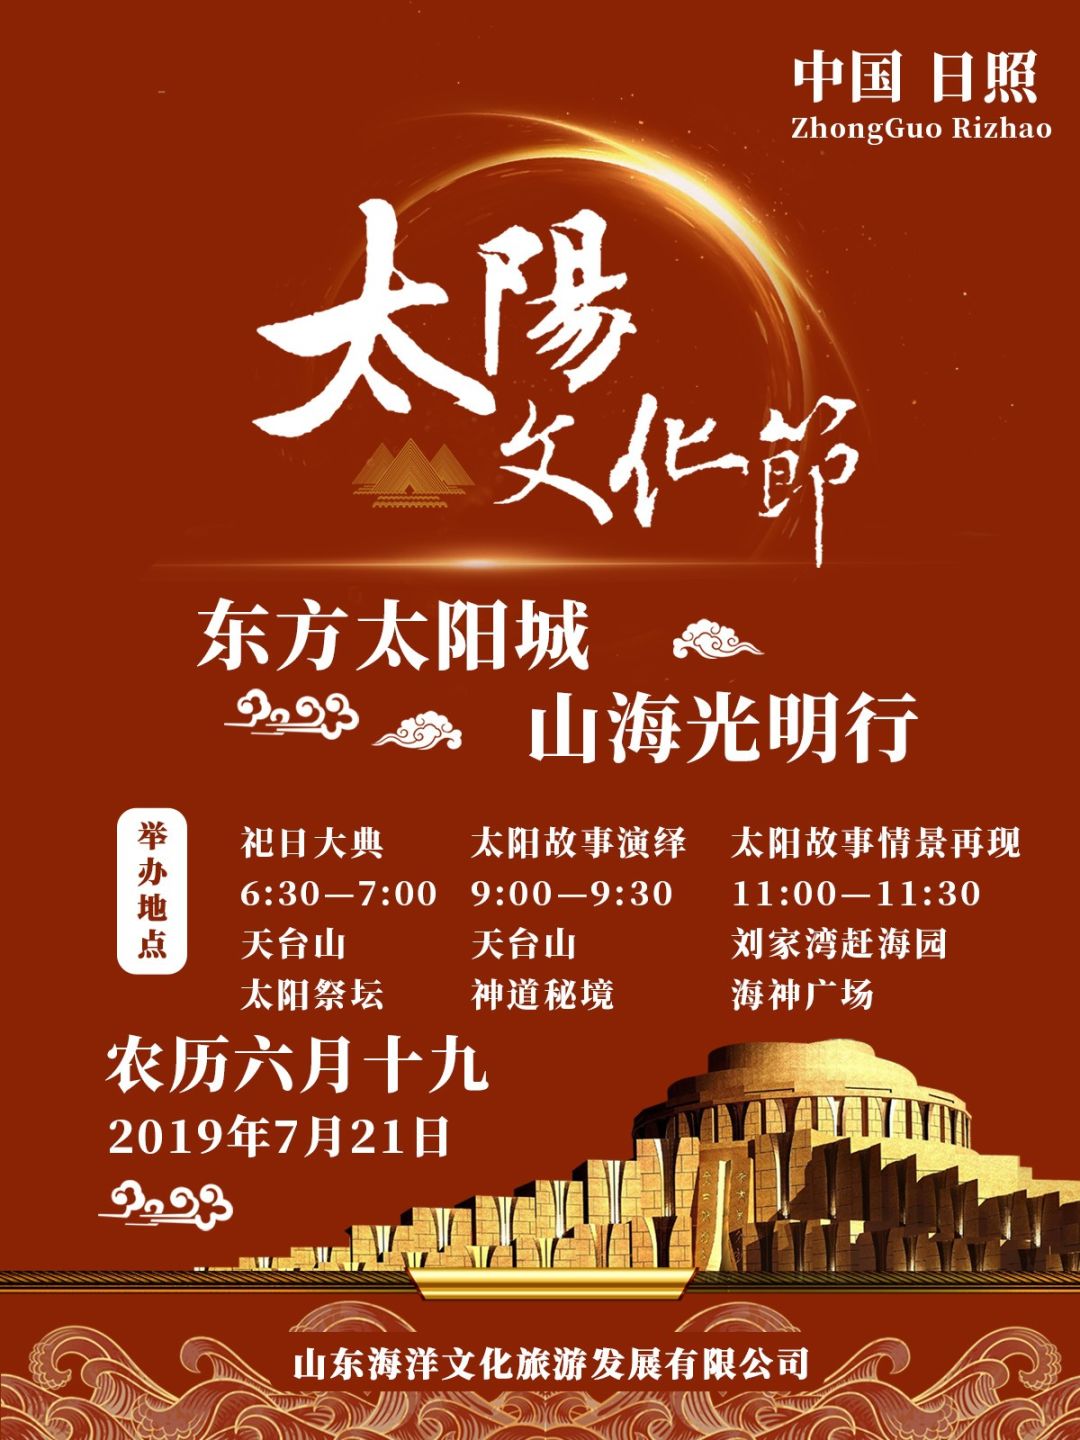 东方太阳城山海光明行 19中国 日照 太阳文化节定于7月21日举办